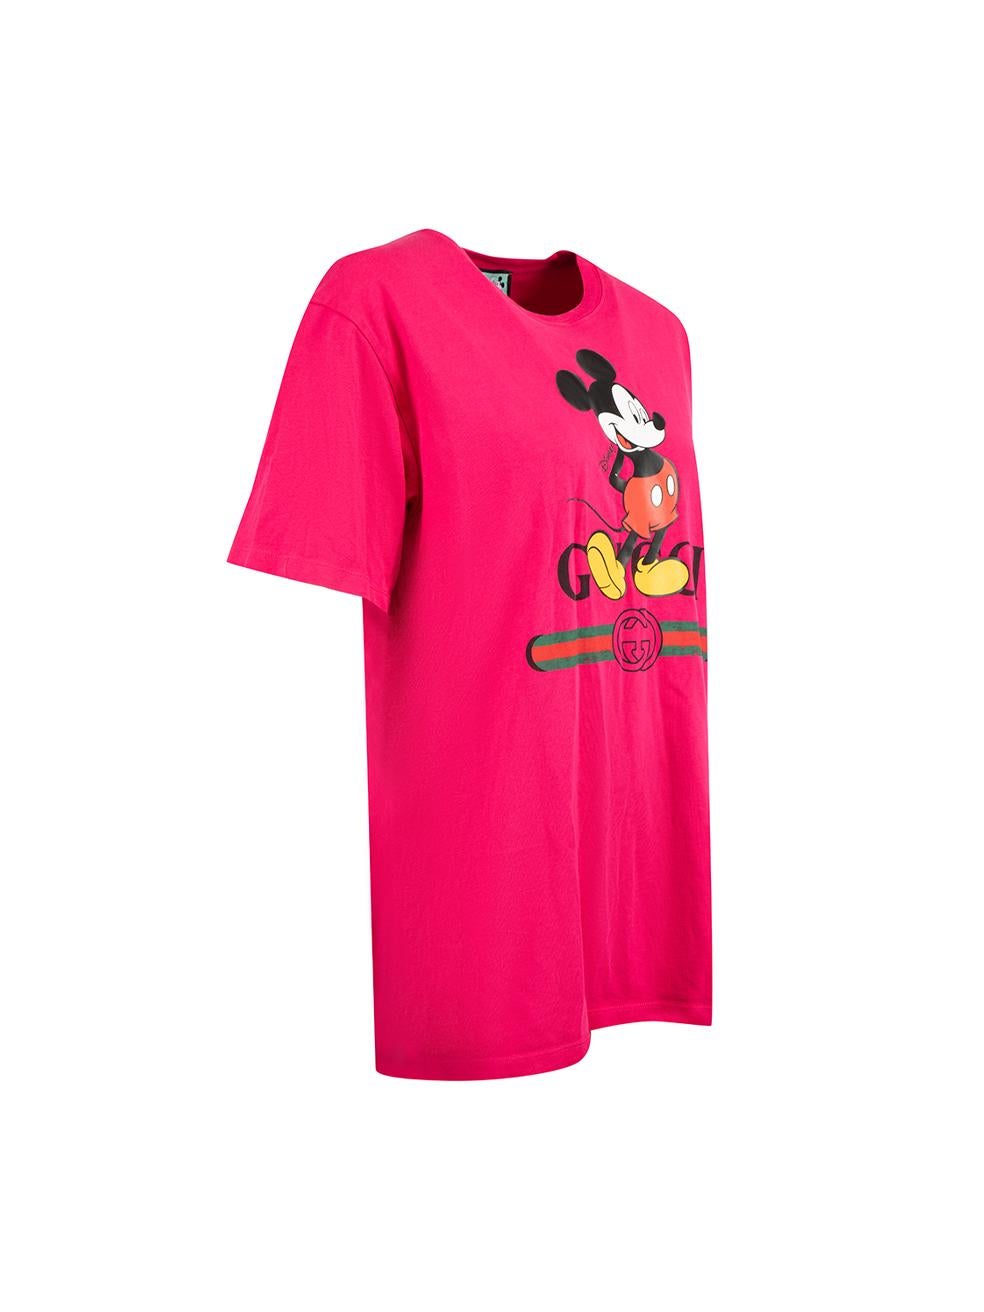 CONDIT ist sehr gut. Das T-Shirt weist nur minimale Gebrauchsspuren auf. Minimale Risse in der Grafik dieses gebrauchten Disney x Gucci Designer-Wiederverkaufsartikels.

Einzelheiten
Disney x Gucci
Heißes Rosa
Baumwolle
T-shirt
Überdimensionale